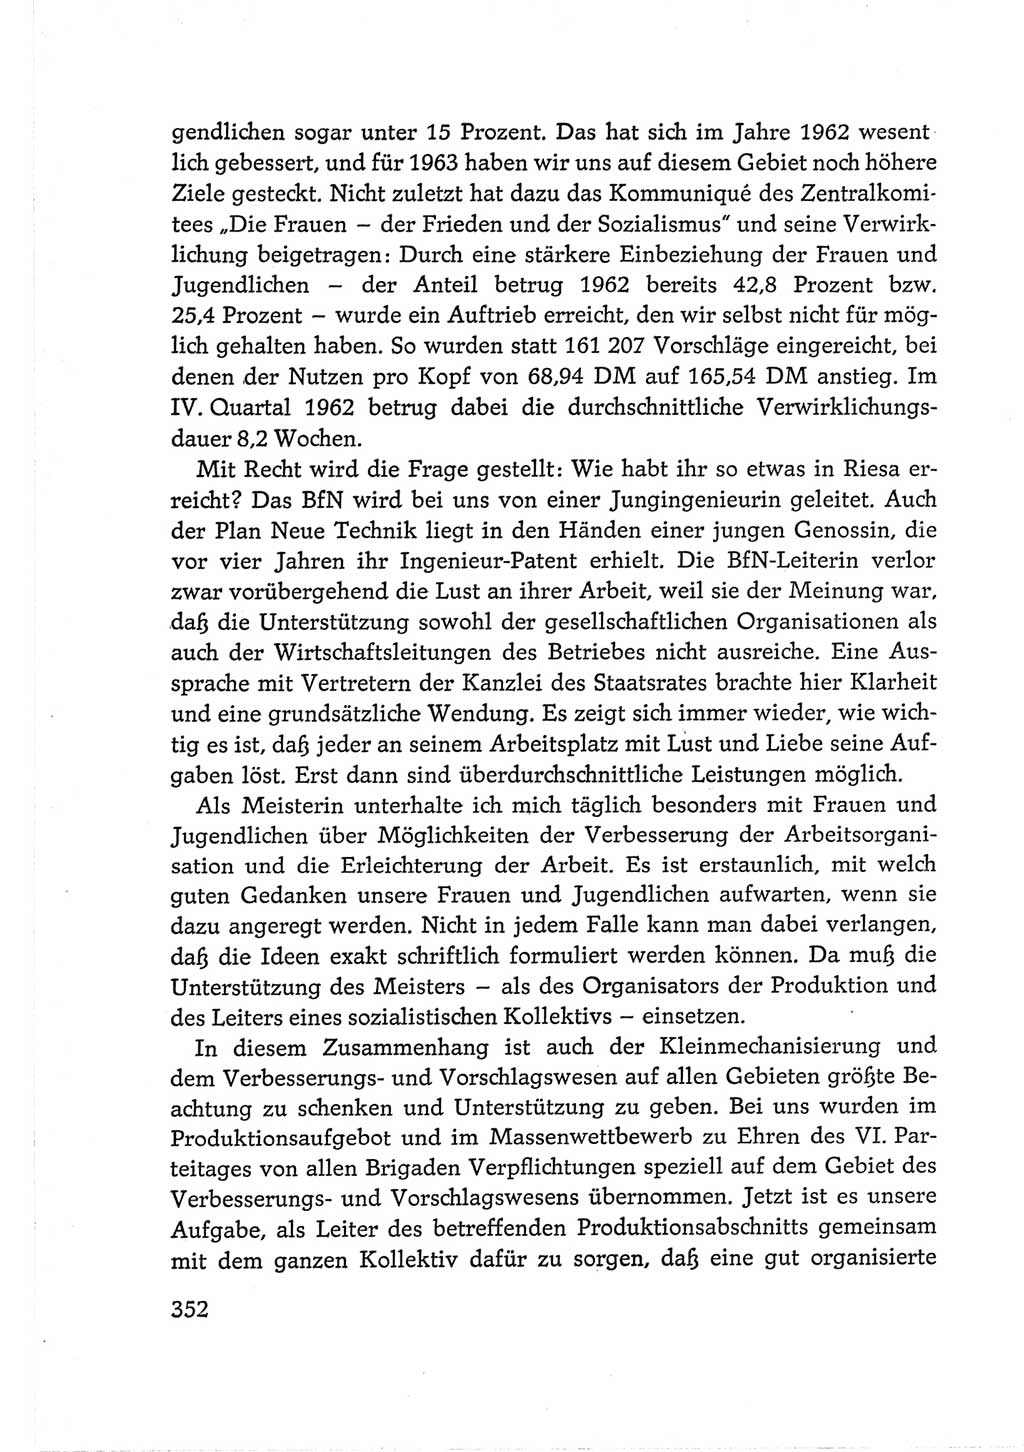 Protokoll der Verhandlungen des Ⅵ. Parteitages der Sozialistischen Einheitspartei Deutschlands (SED) [Deutsche Demokratische Republik (DDR)] 1963, Band Ⅲ, Seite 352 (Prot. Verh. Ⅵ. PT SED DDR 1963, Bd. Ⅲ, S. 352)